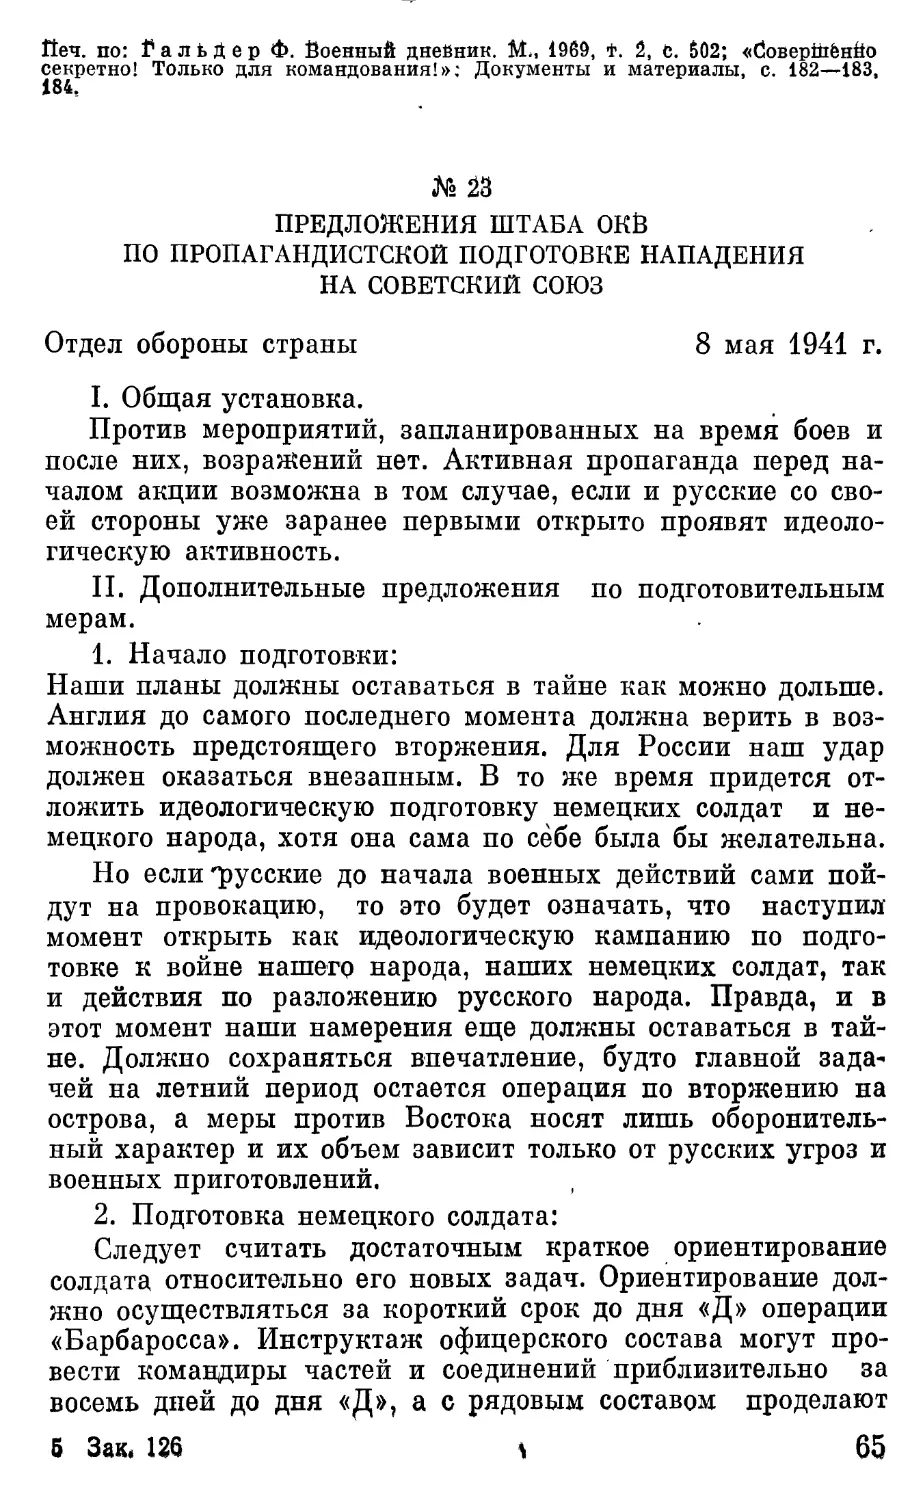 Предложения штаба ОКБ по пропагандистской подготовке нападения на Советский Союз.